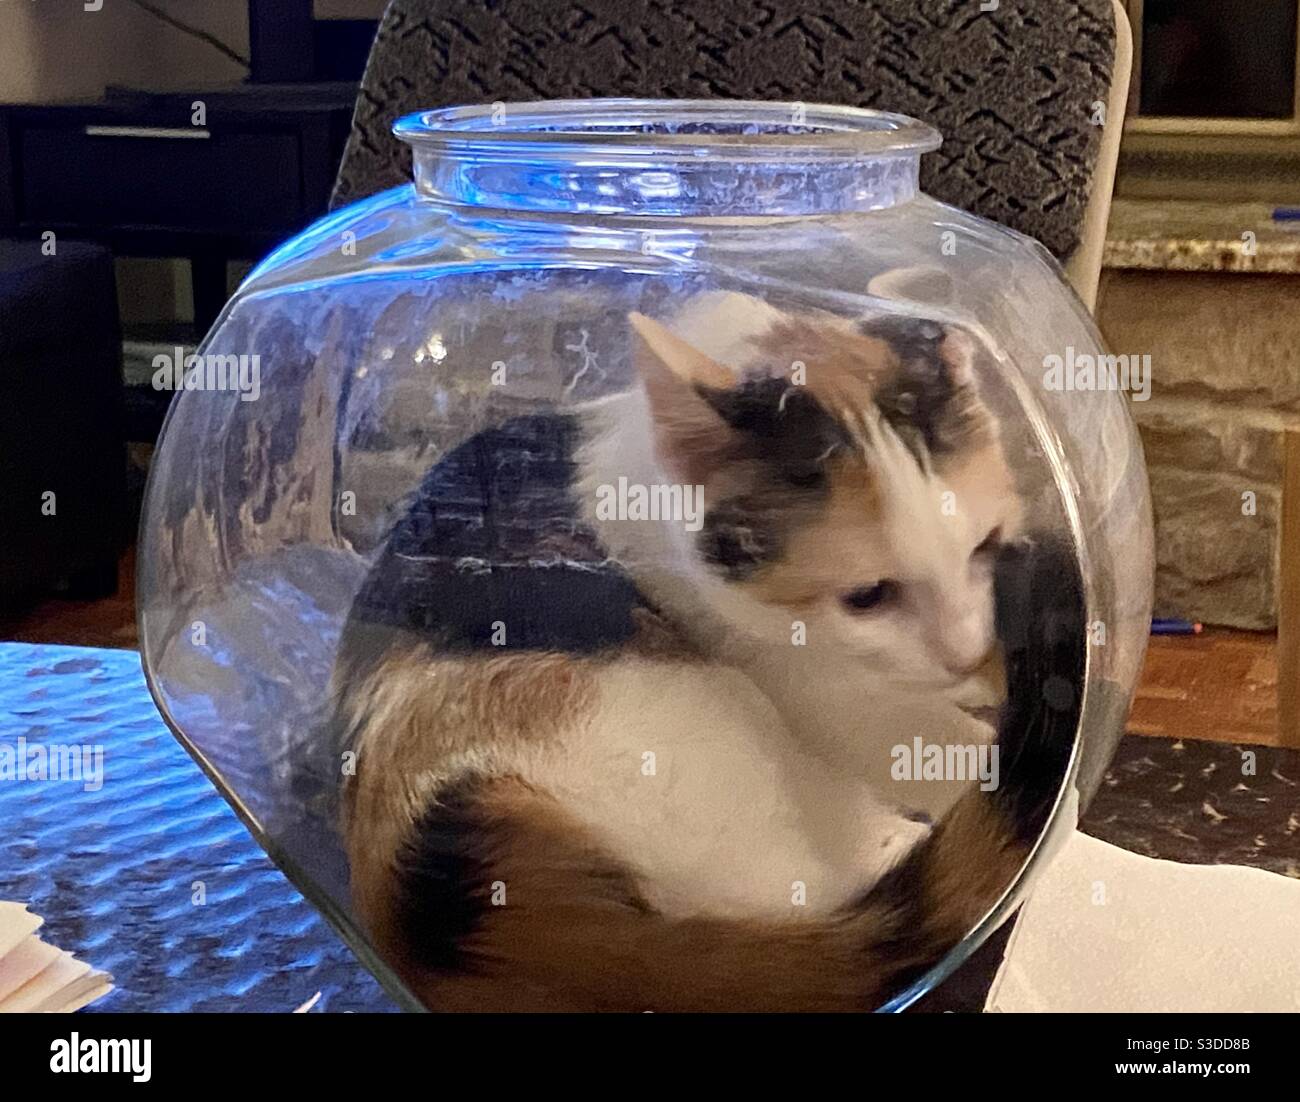 Calico chaton dans un bol à poissons Banque D'Images